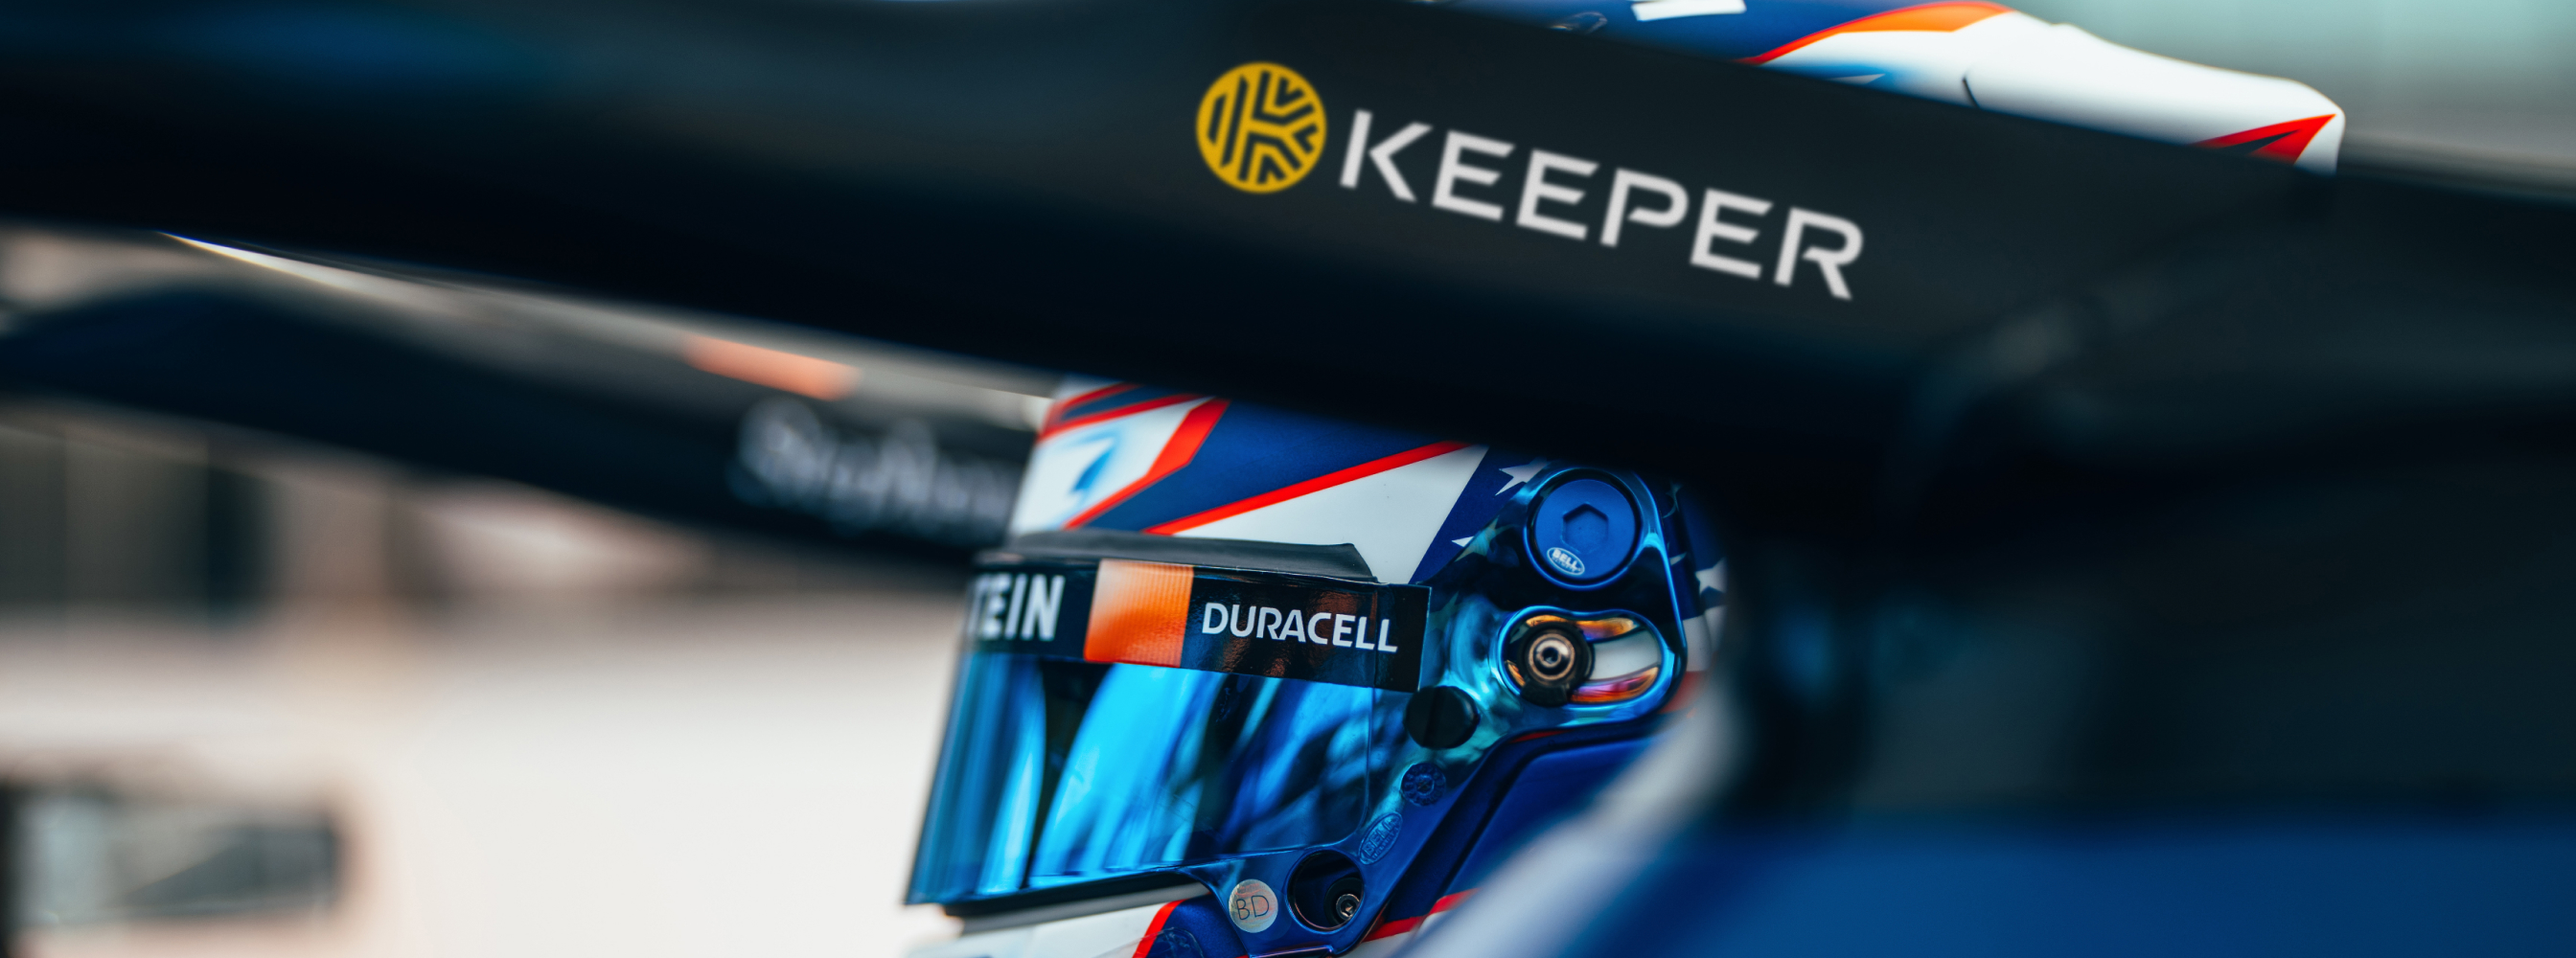 Keeper x Williams Racing - Przyśpieszanie innowacji